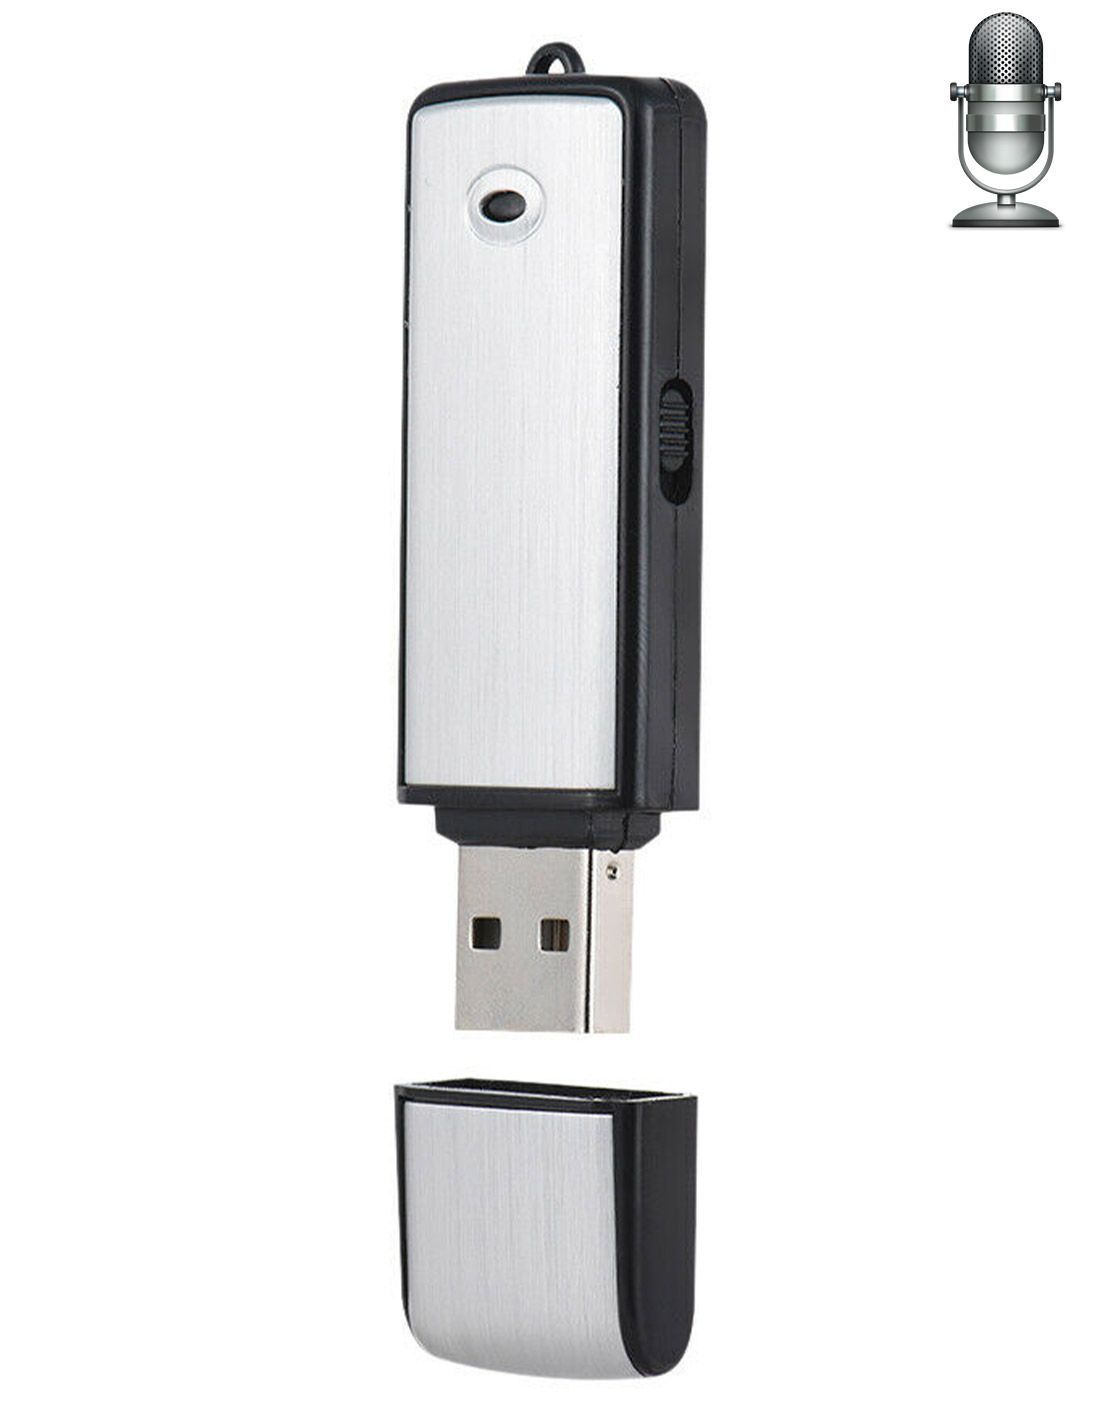 Clé USB Caméra Espion Micro SD 16Go HD Vidéo Photo Son